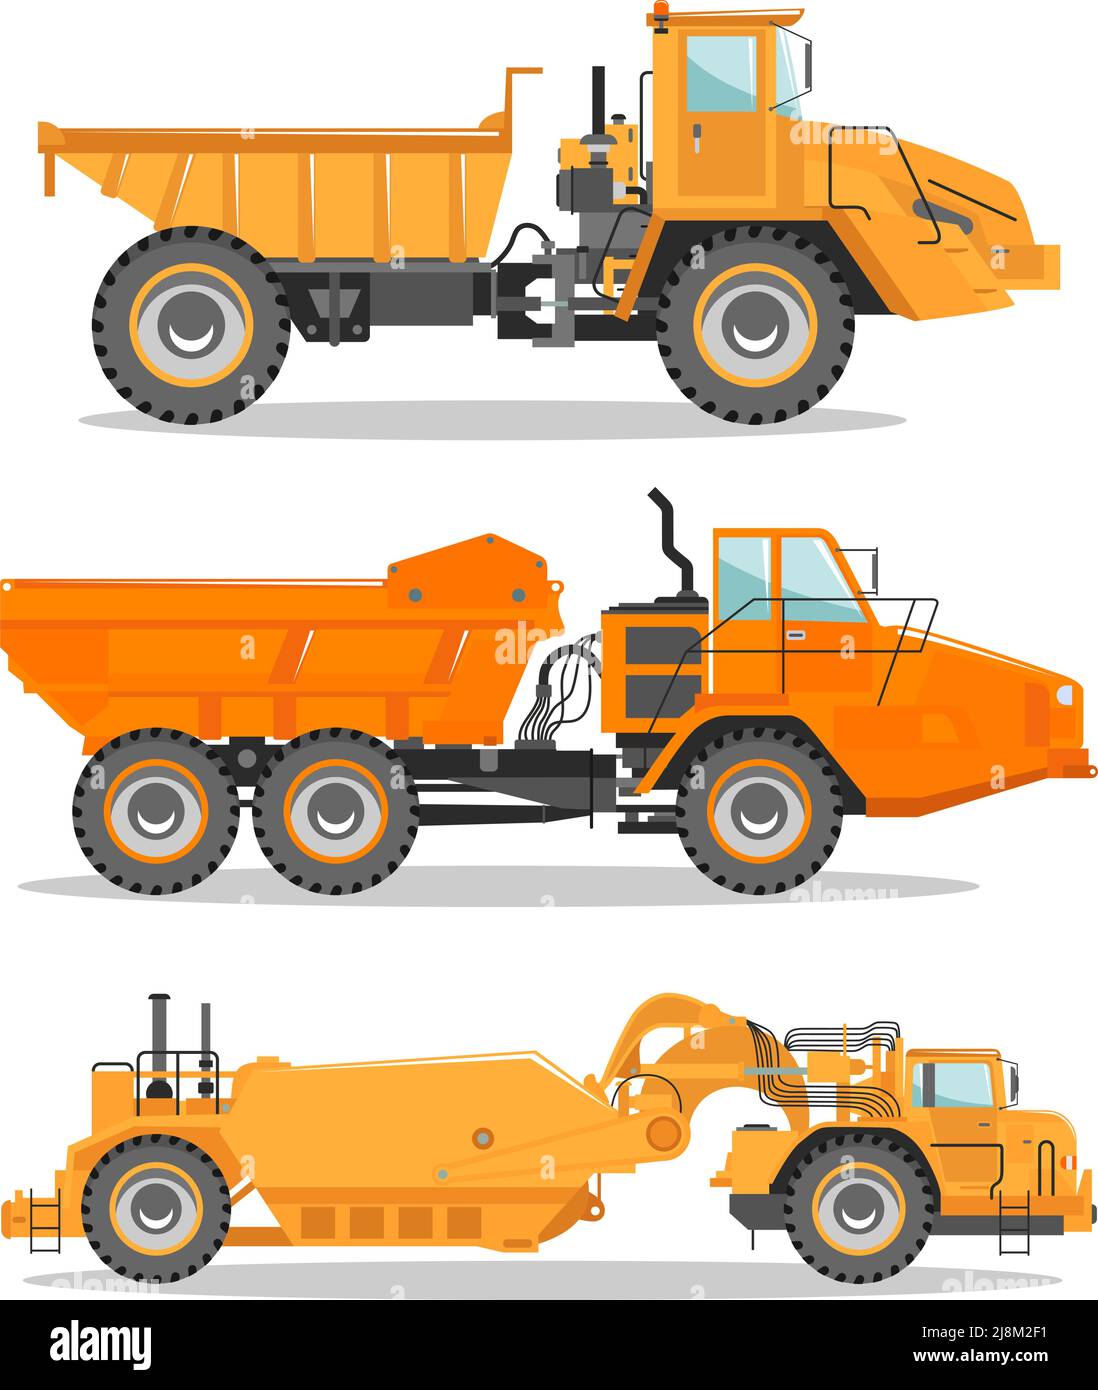 Detaillierte Abbildung des Miningtrucks. Off-Highway-Lkw. Schwere Bergbaumaschinen und Baumaschinen. Stock Vektor